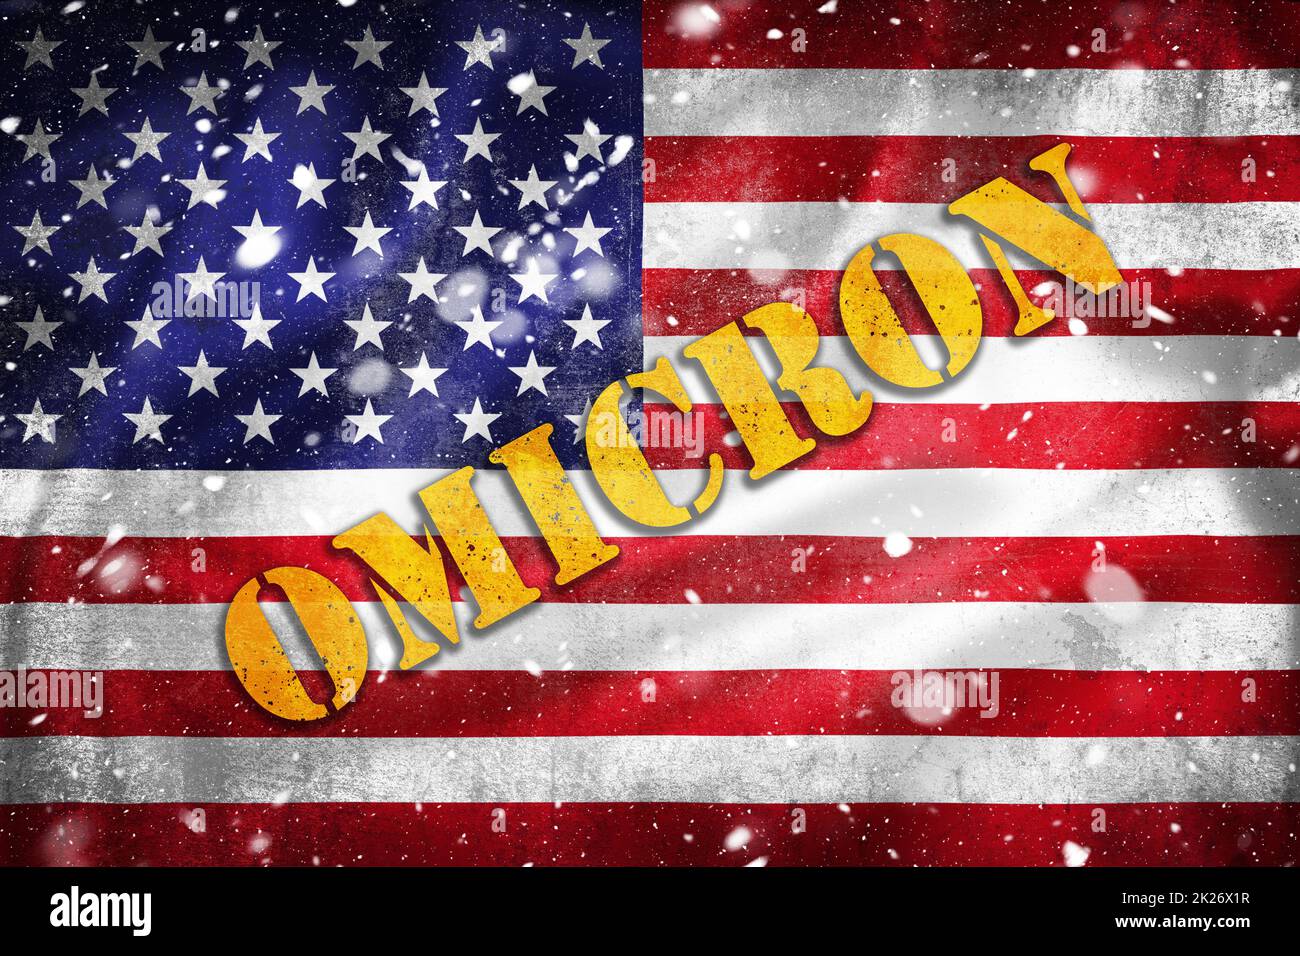 Illustrazione della bandiera di grunge degli Stati Uniti d'America con testo Omicron e sovrapposizione neve Foto Stock